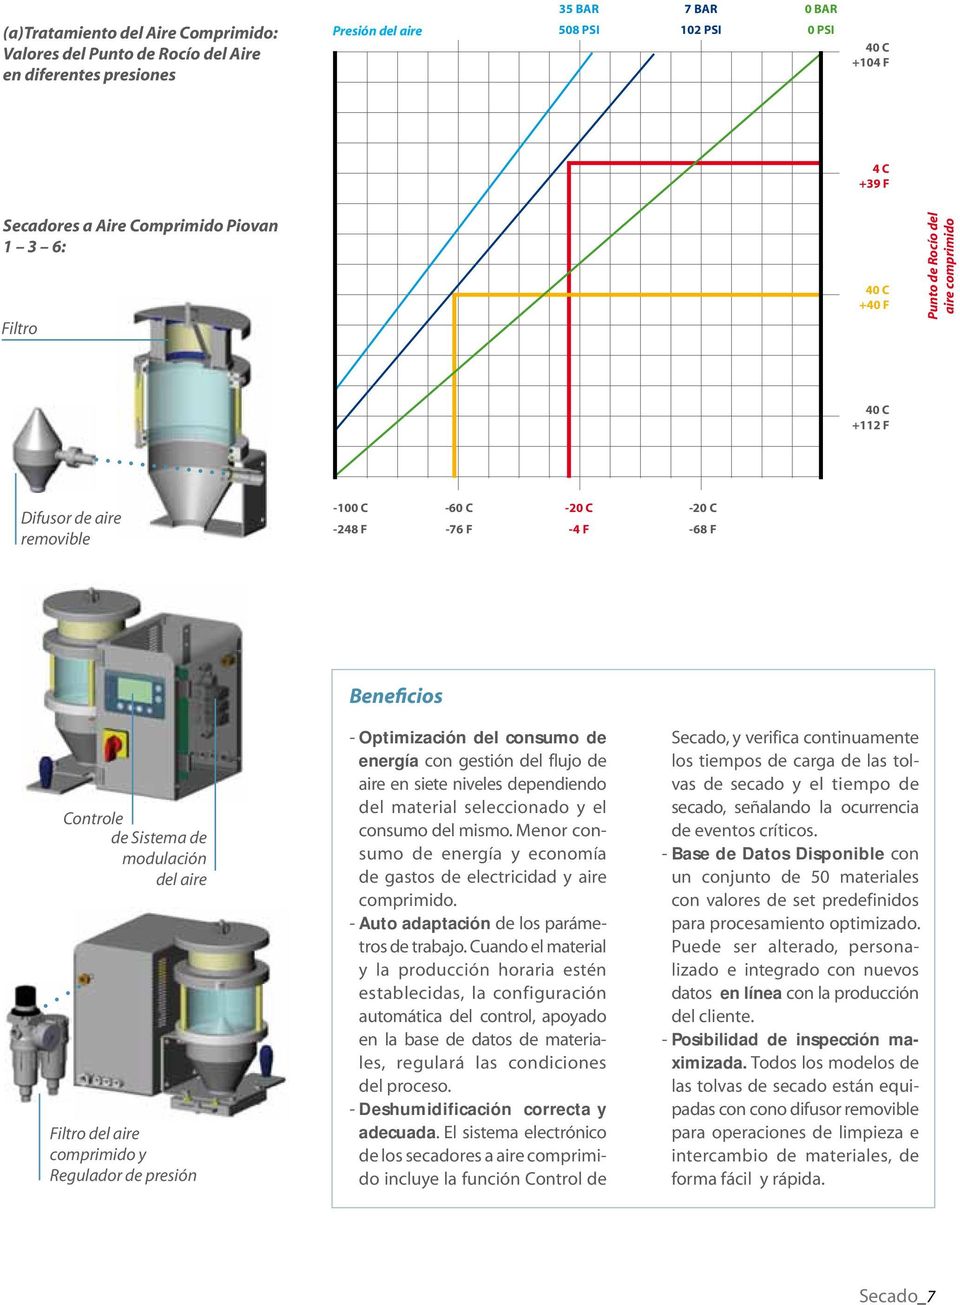 modulación del aire Filtro del aire comprimido y Regulador de presión - Optimización del consumo de energía con gestión del flujo de aire en siete niveles dependiendo del material seleccionado y el